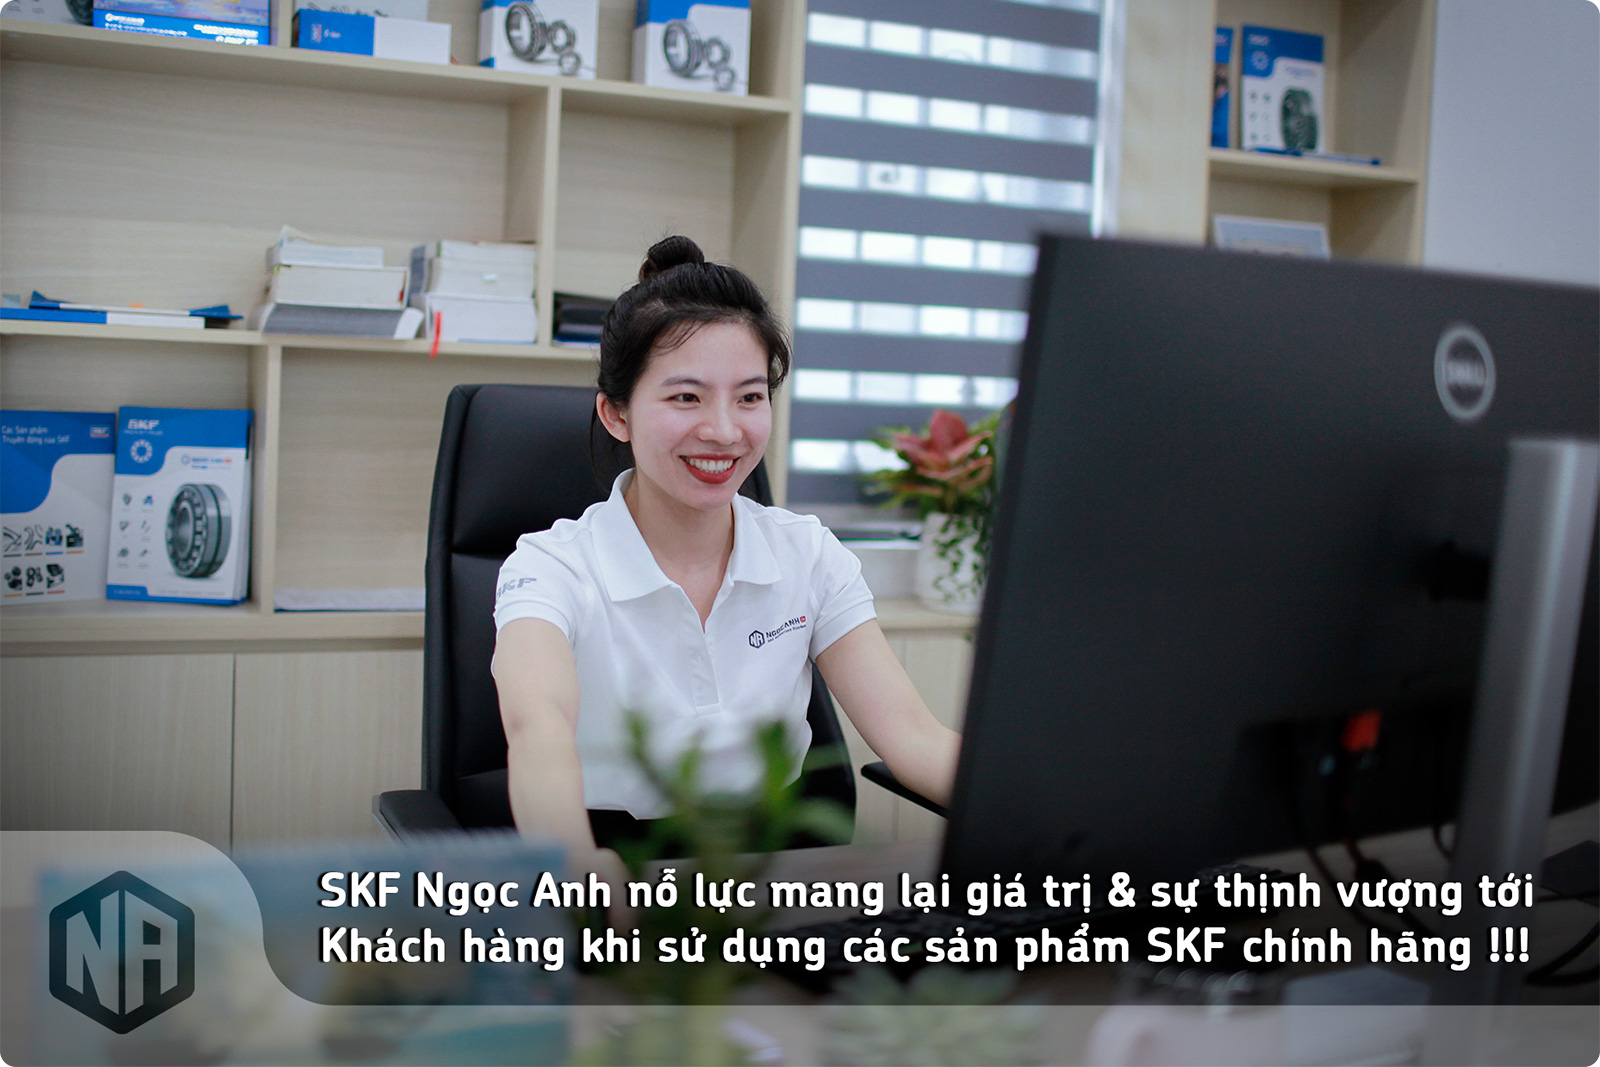 SKF Ngọc Anh nỗ lực mang lại giá trị và sự thịnh vượng cho Khách hàng khi sử dụng các sản phẩm SKF chính hãng.